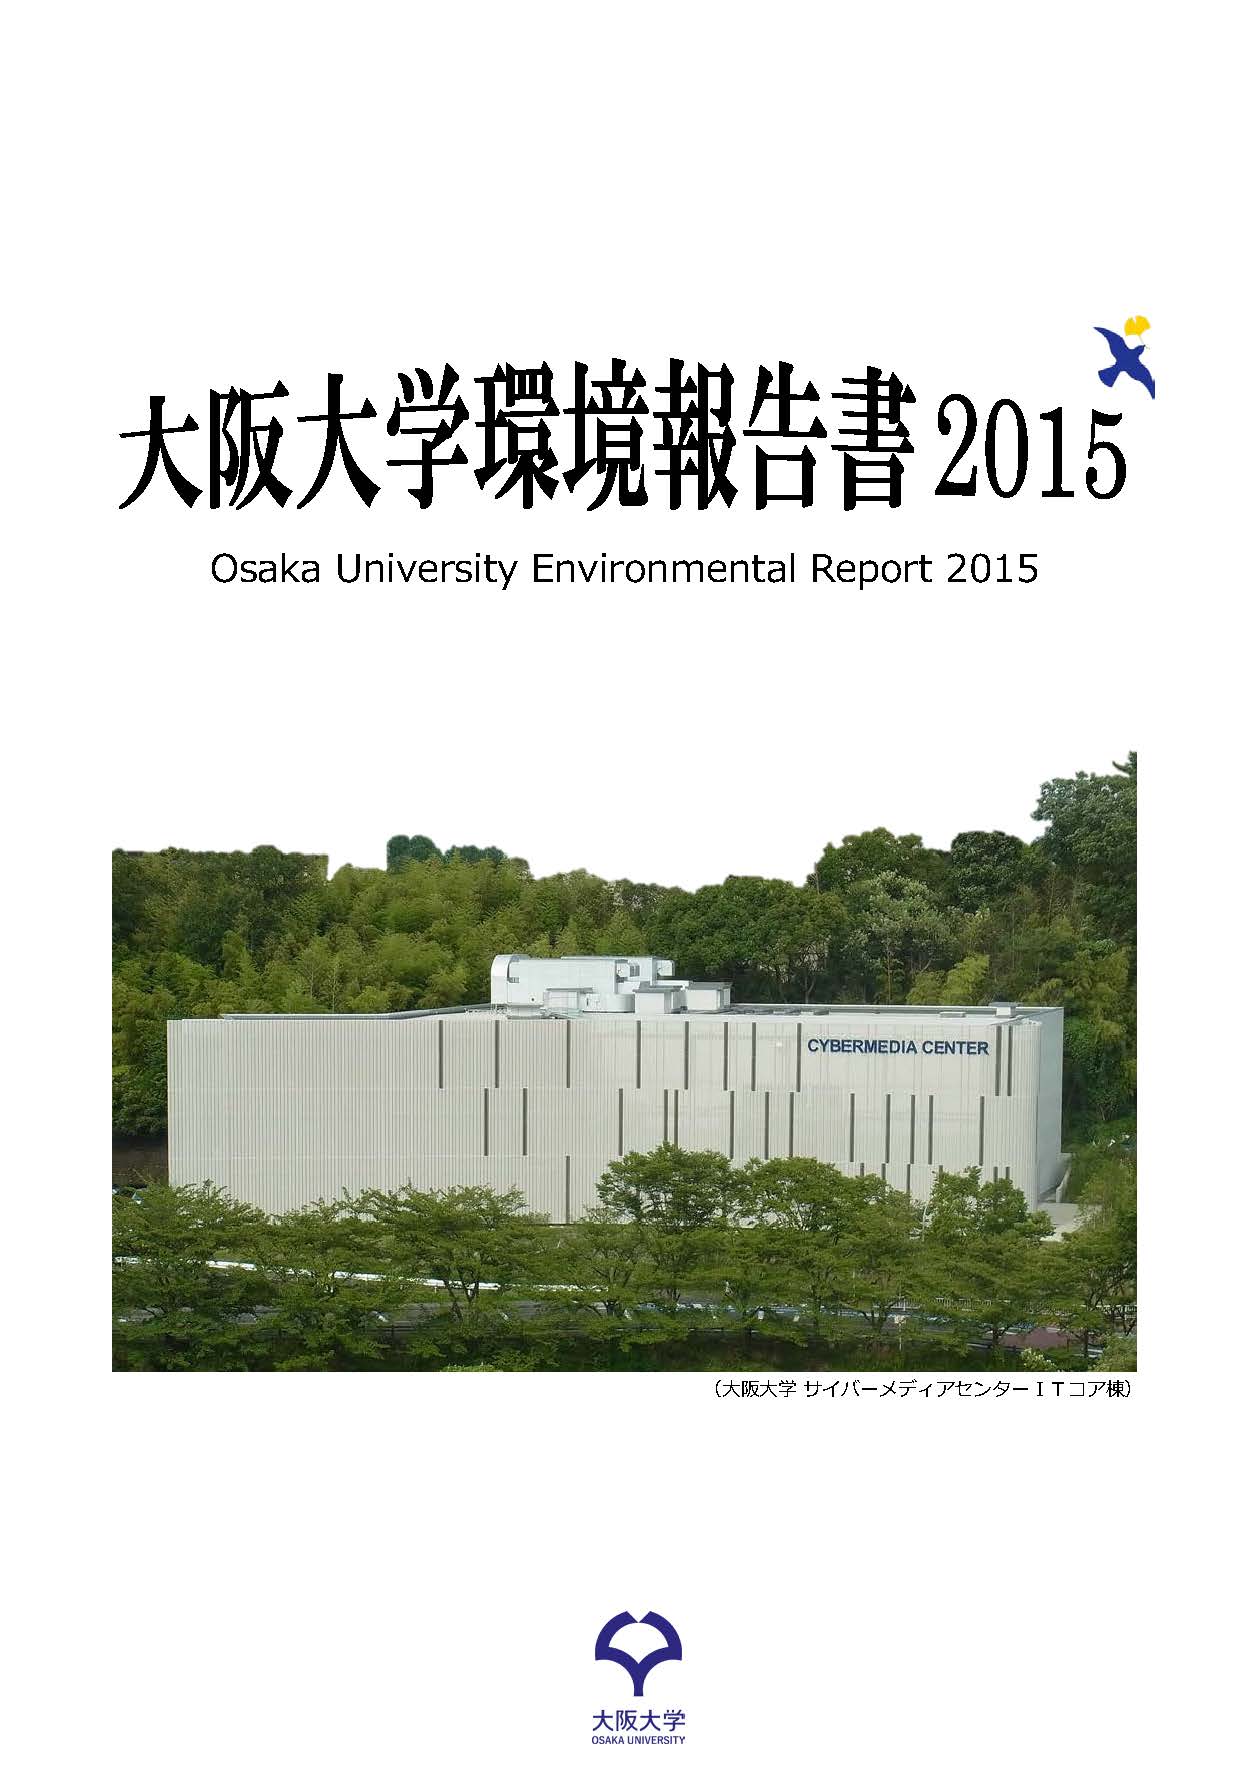 「環境報告書2015」を公表しました。